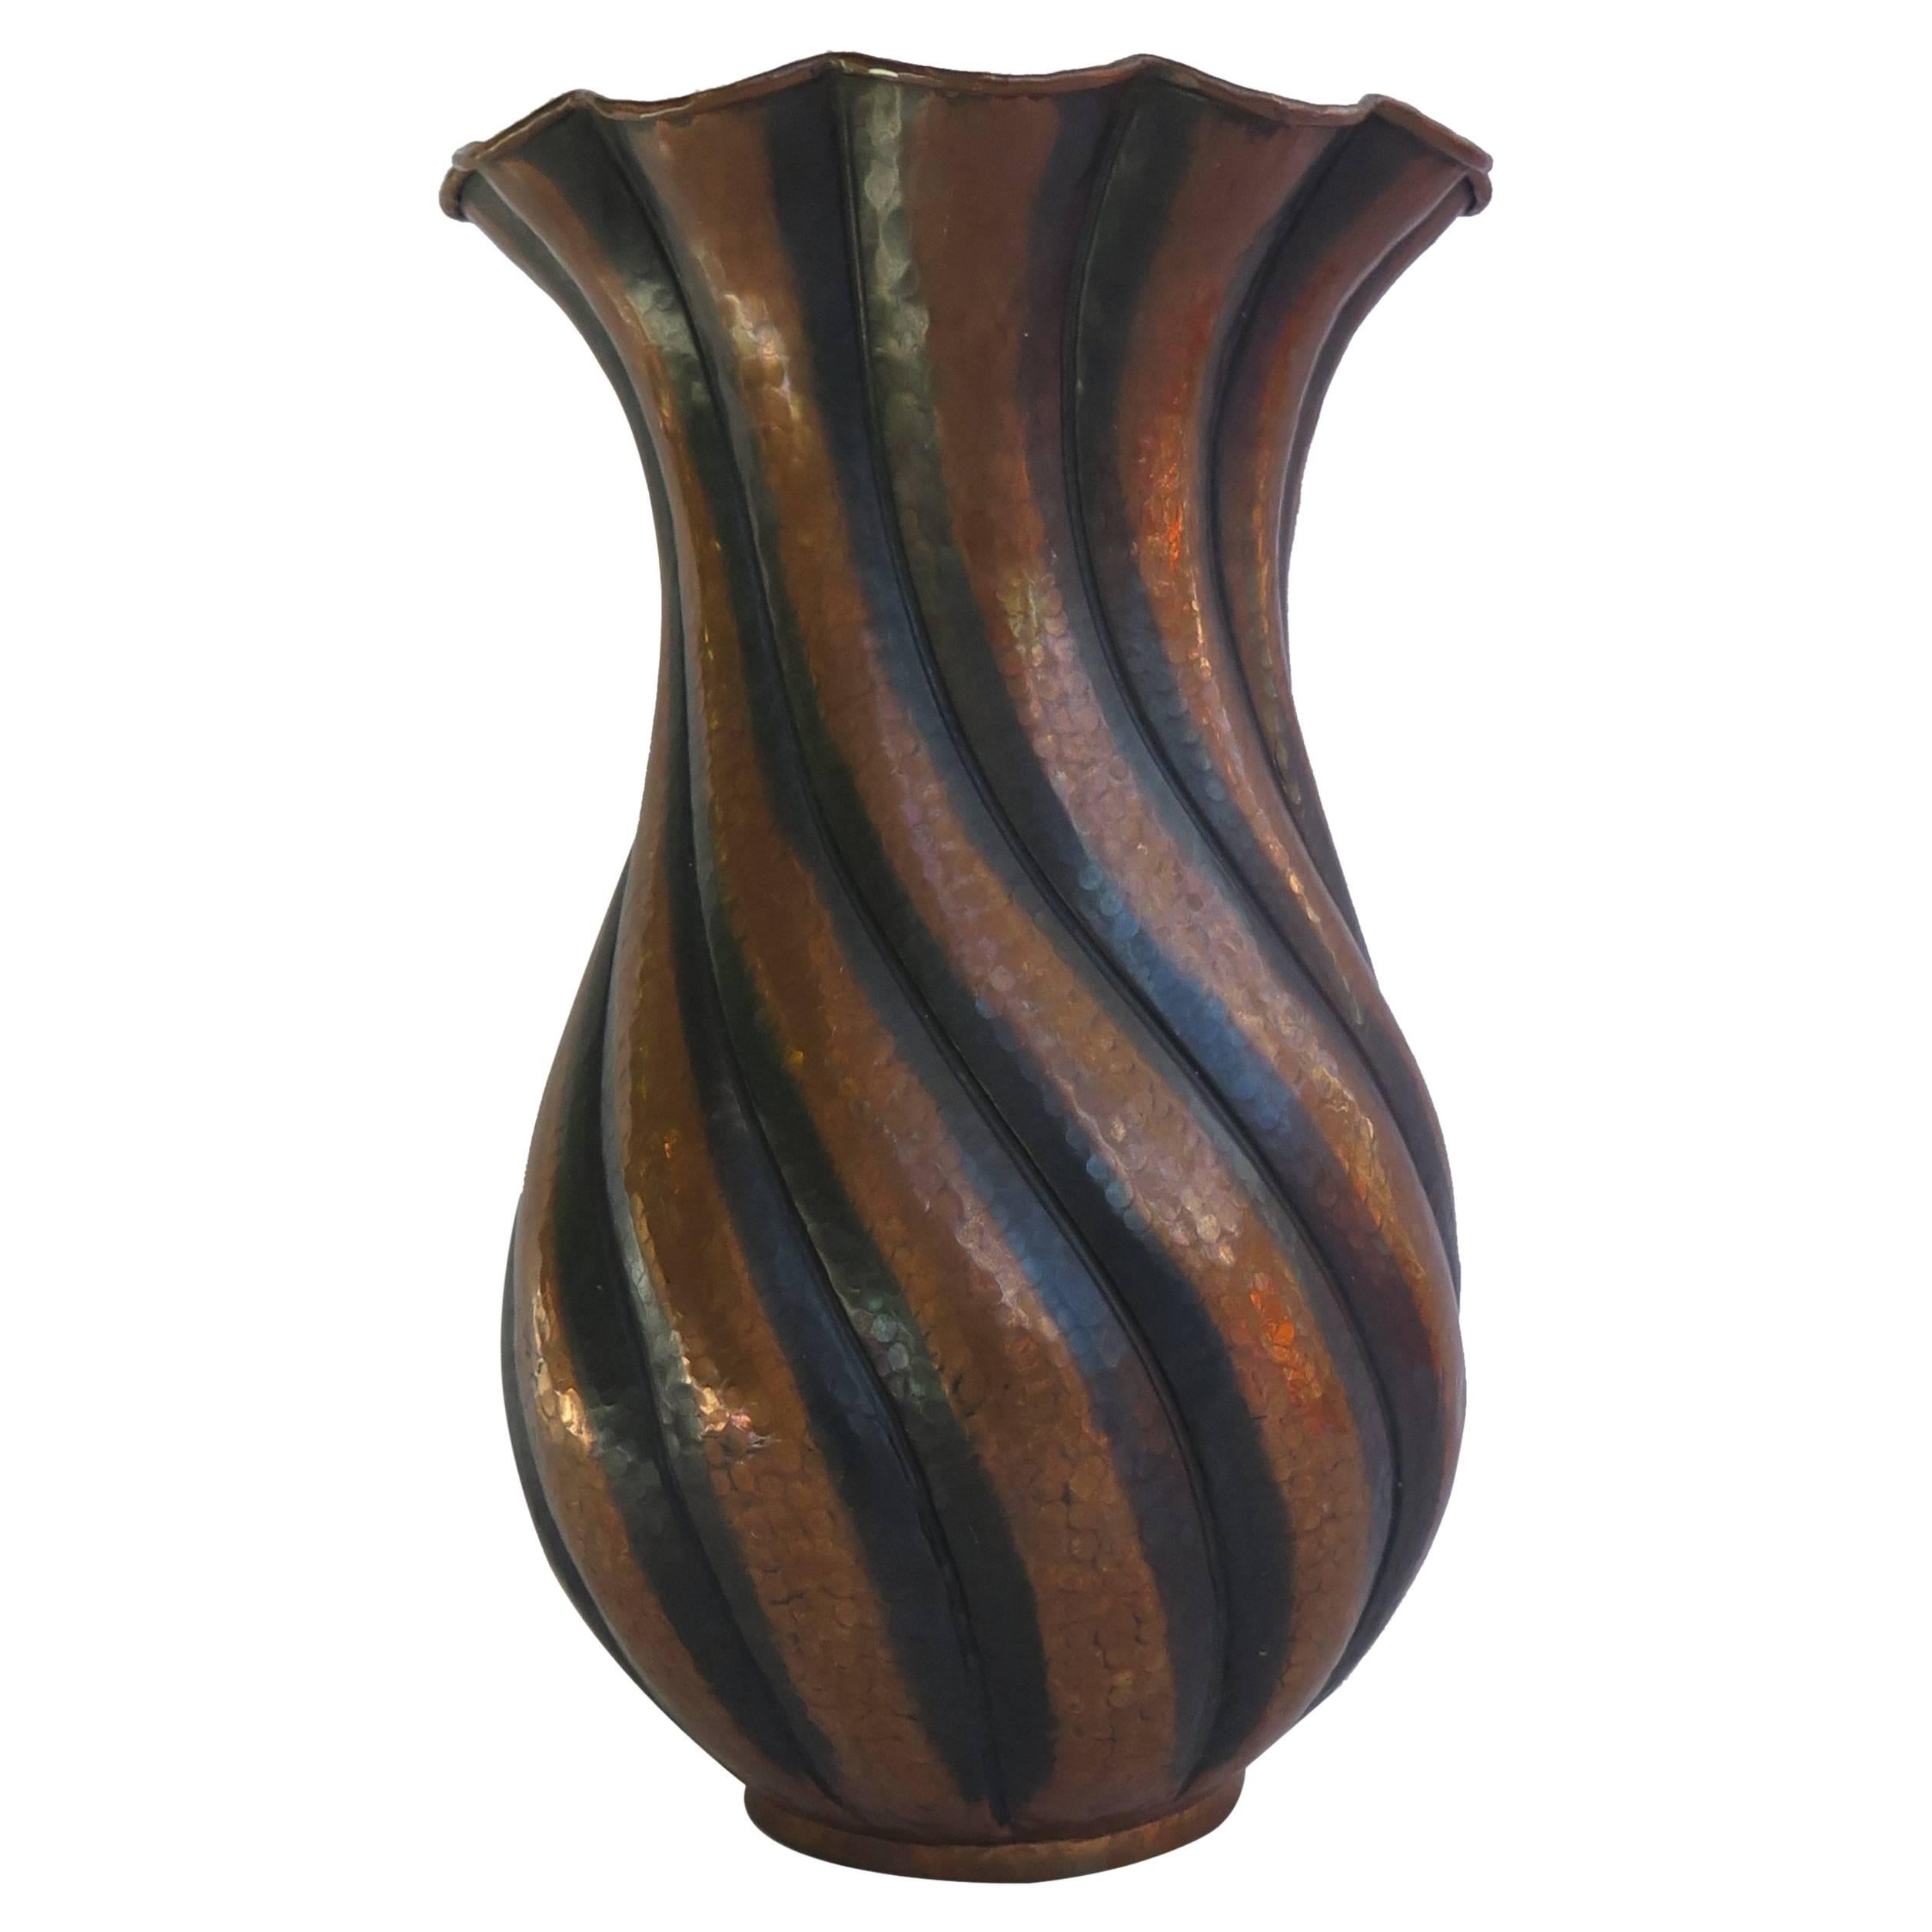 Large, Egidio Casagrande Vase, Hammered Copper, Twist Fluted, Italy, circa 1930